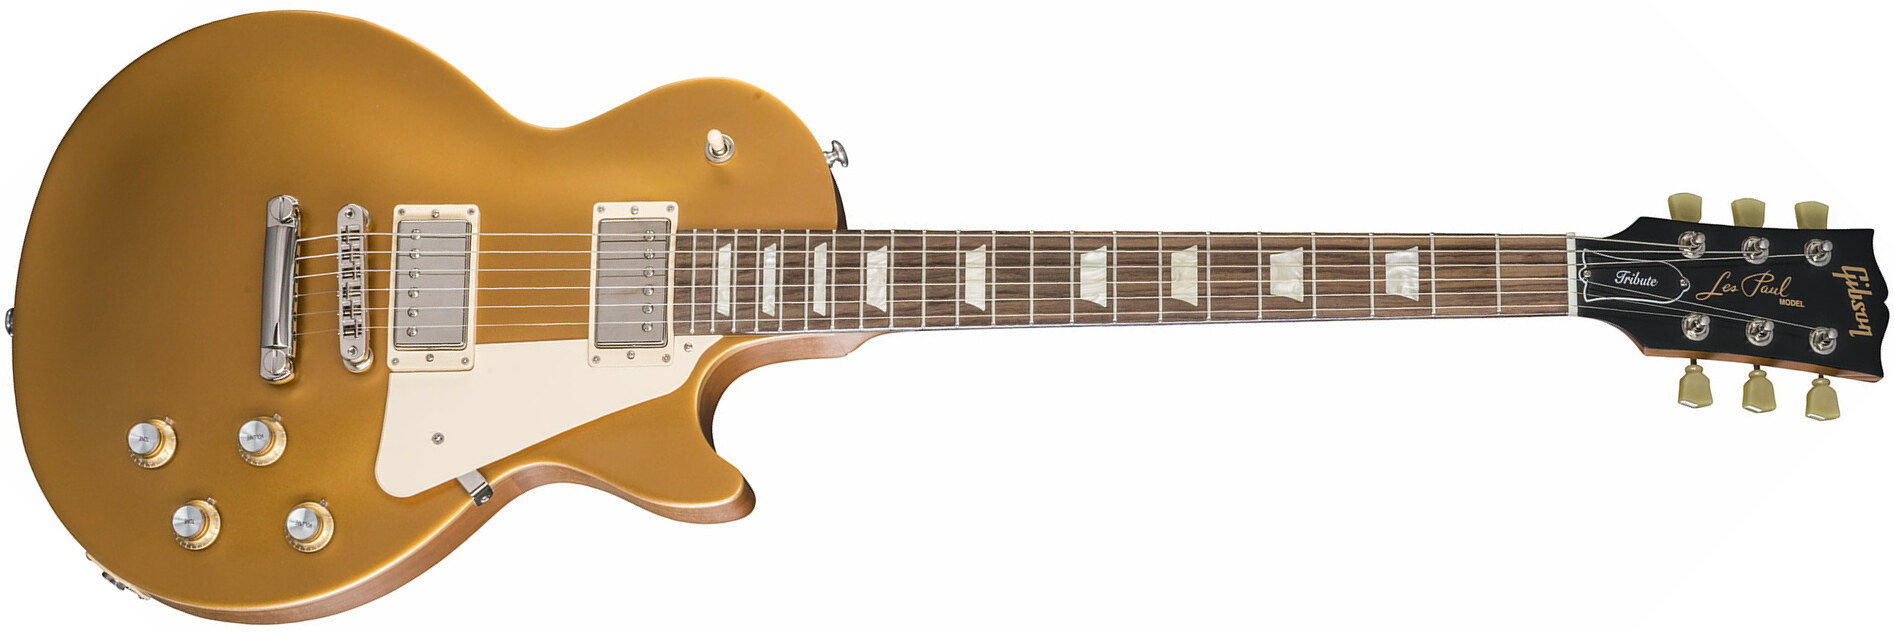 Gibson Les Paul Tribute 2018 - Satin Gold Top - Guitarra eléctrica de corte único. - Main picture